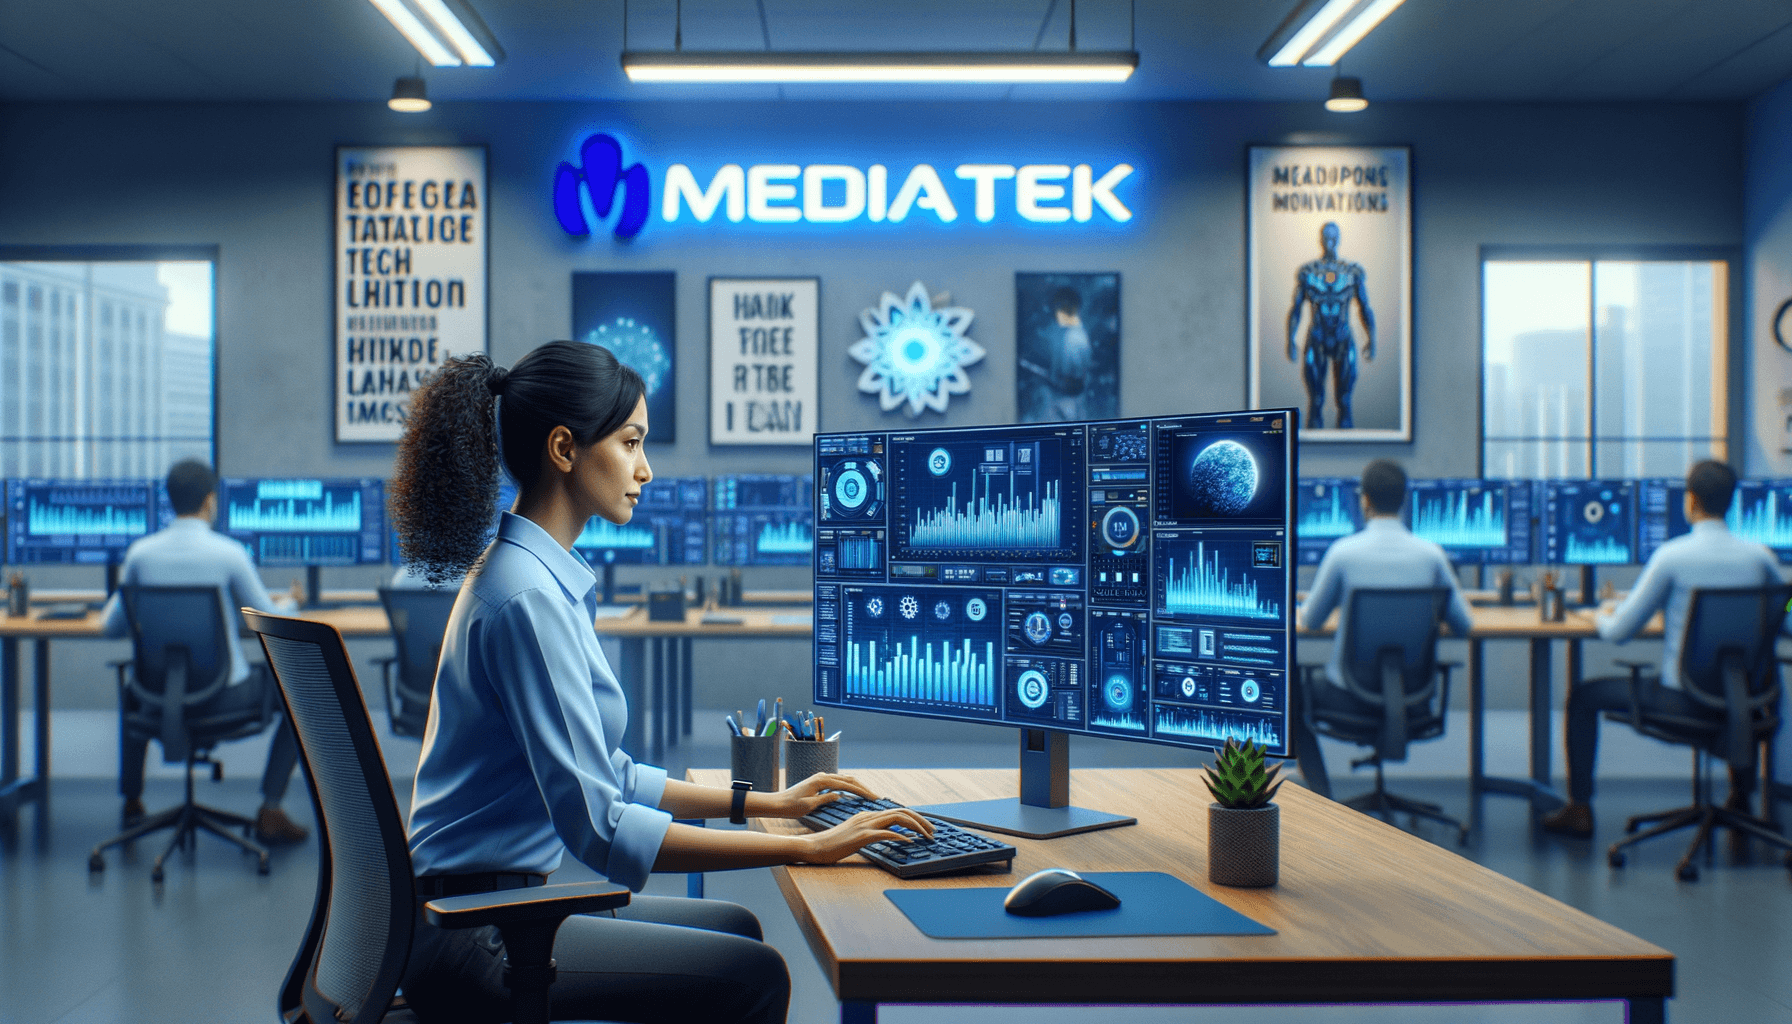 MediaTek Data Scientist